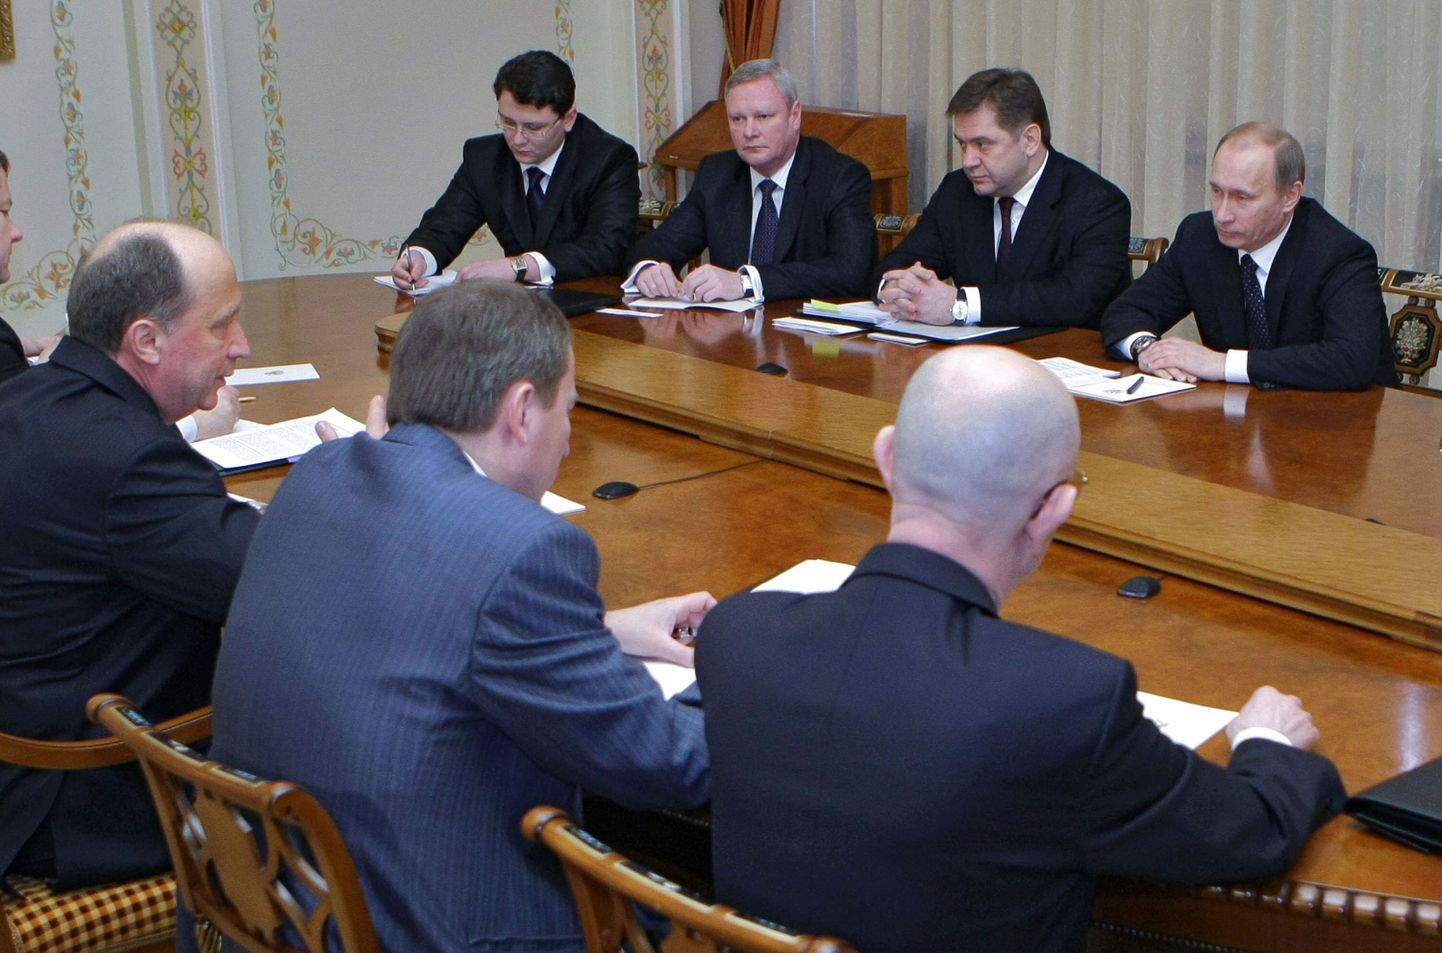 Leedu peaminister Andrius Kubilius (vasakul) kohtus Vene valitsusjuhi Vladimir Putiniga (paremal).